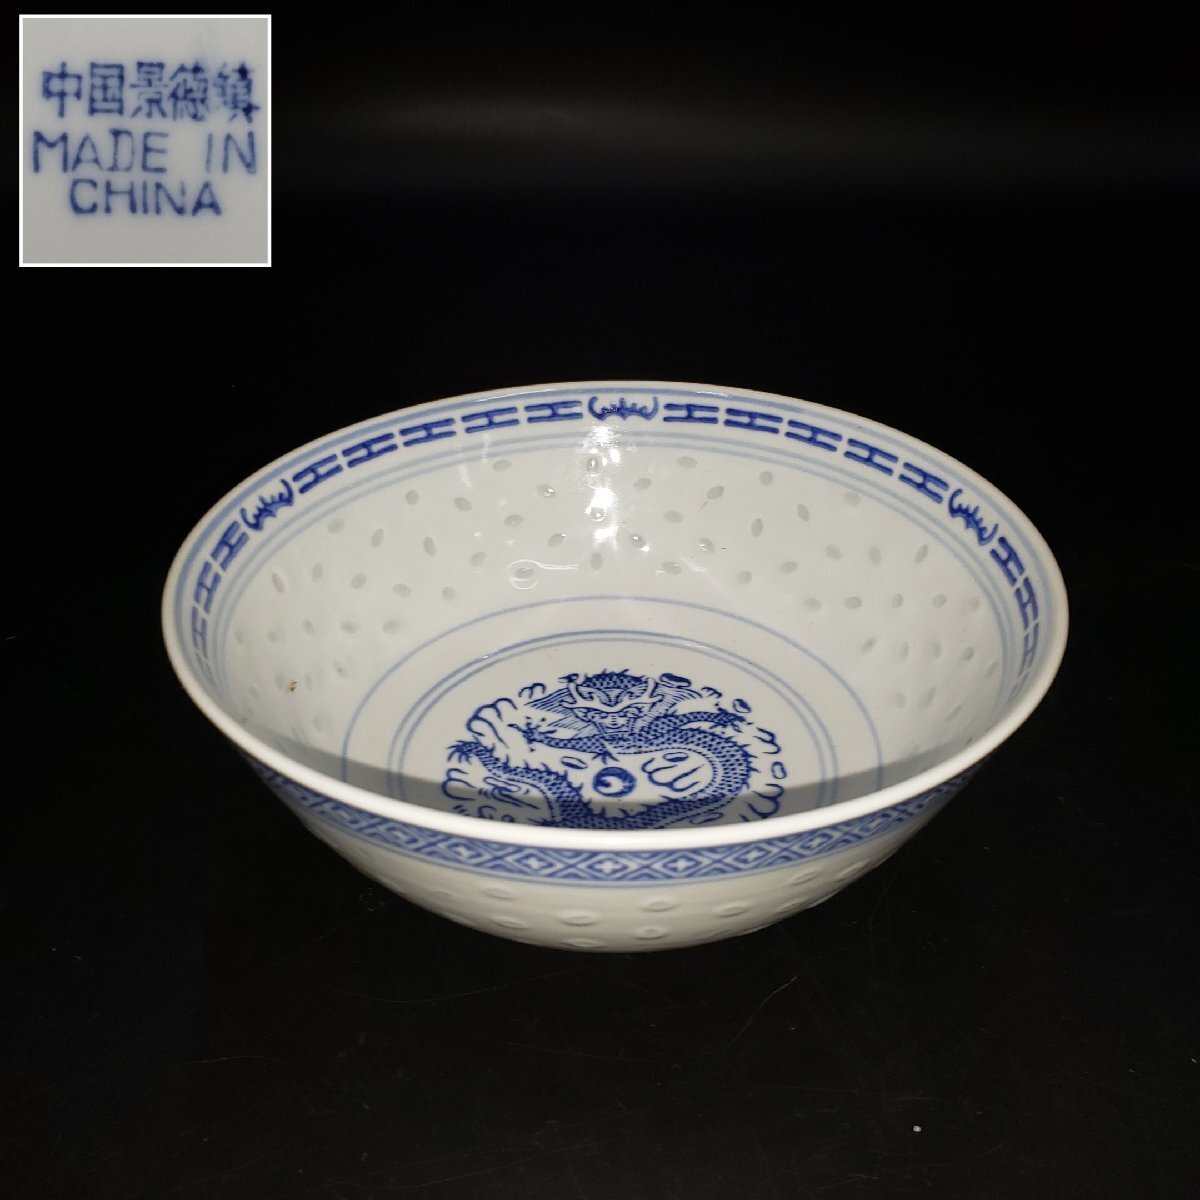  China . virtue . middle pot dragon . dragon pot large bowl porcelain bowl deep pot platter blue and white ceramics .... China . virtue . ho taru...... skill China porcelain [60s2306]